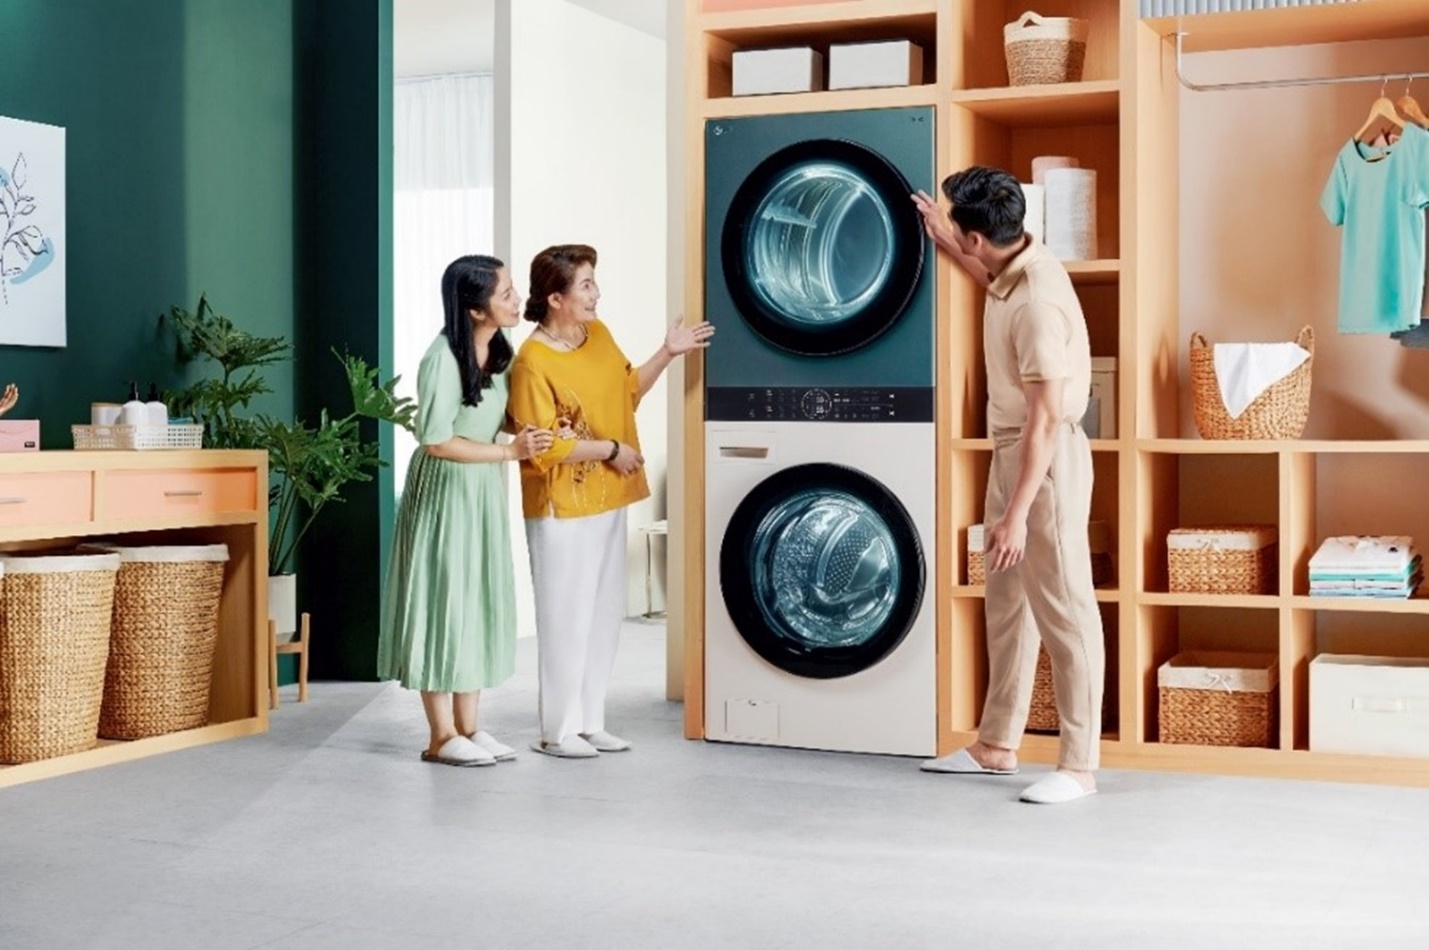 LG tiếp tục dẫn đầu thị phần máy giặt tại Việt Nam theo GfK- Ảnh 2.